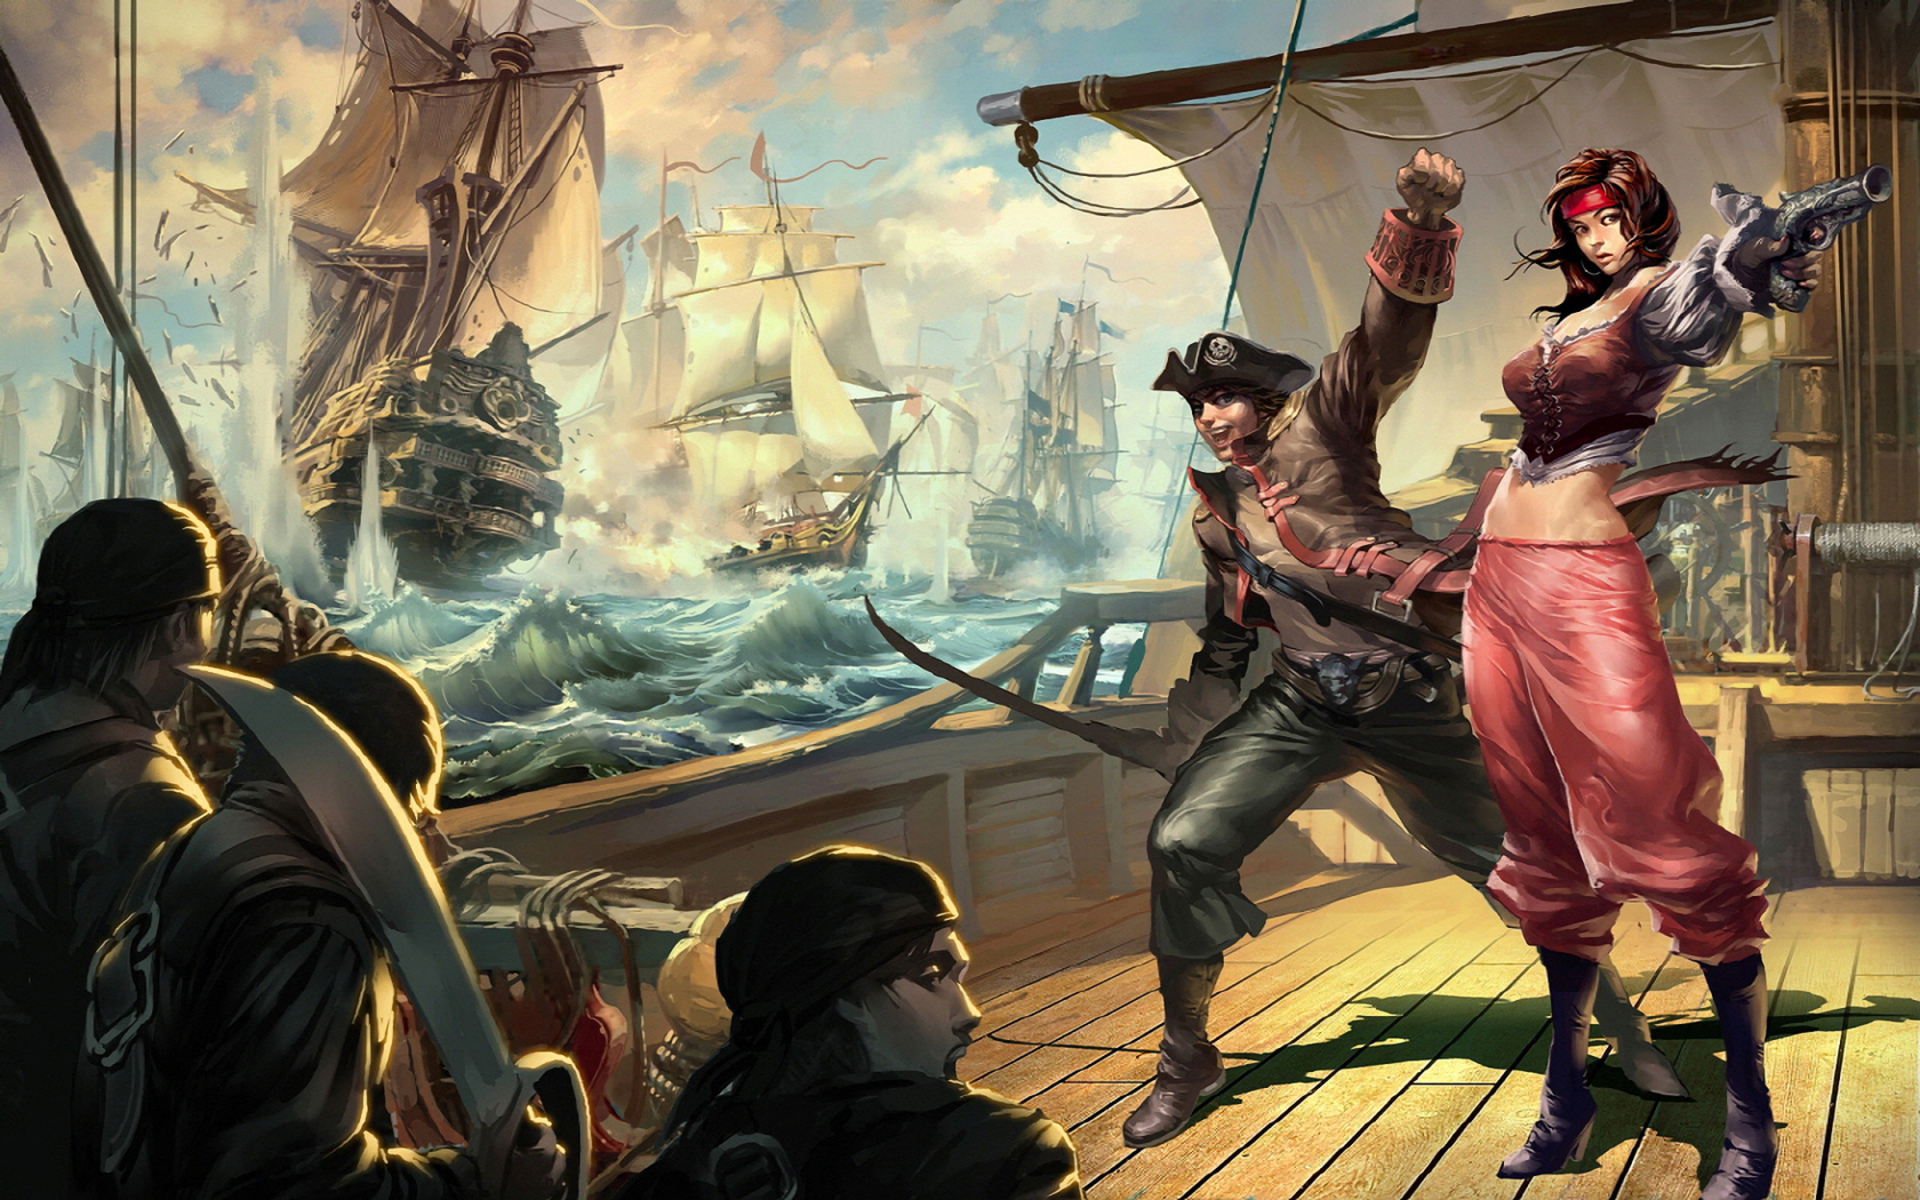 fantasy, Action, Adventure, Pirate, Weapons, Sword, Women, Men, Ships, Ocean, Art Wallpaper